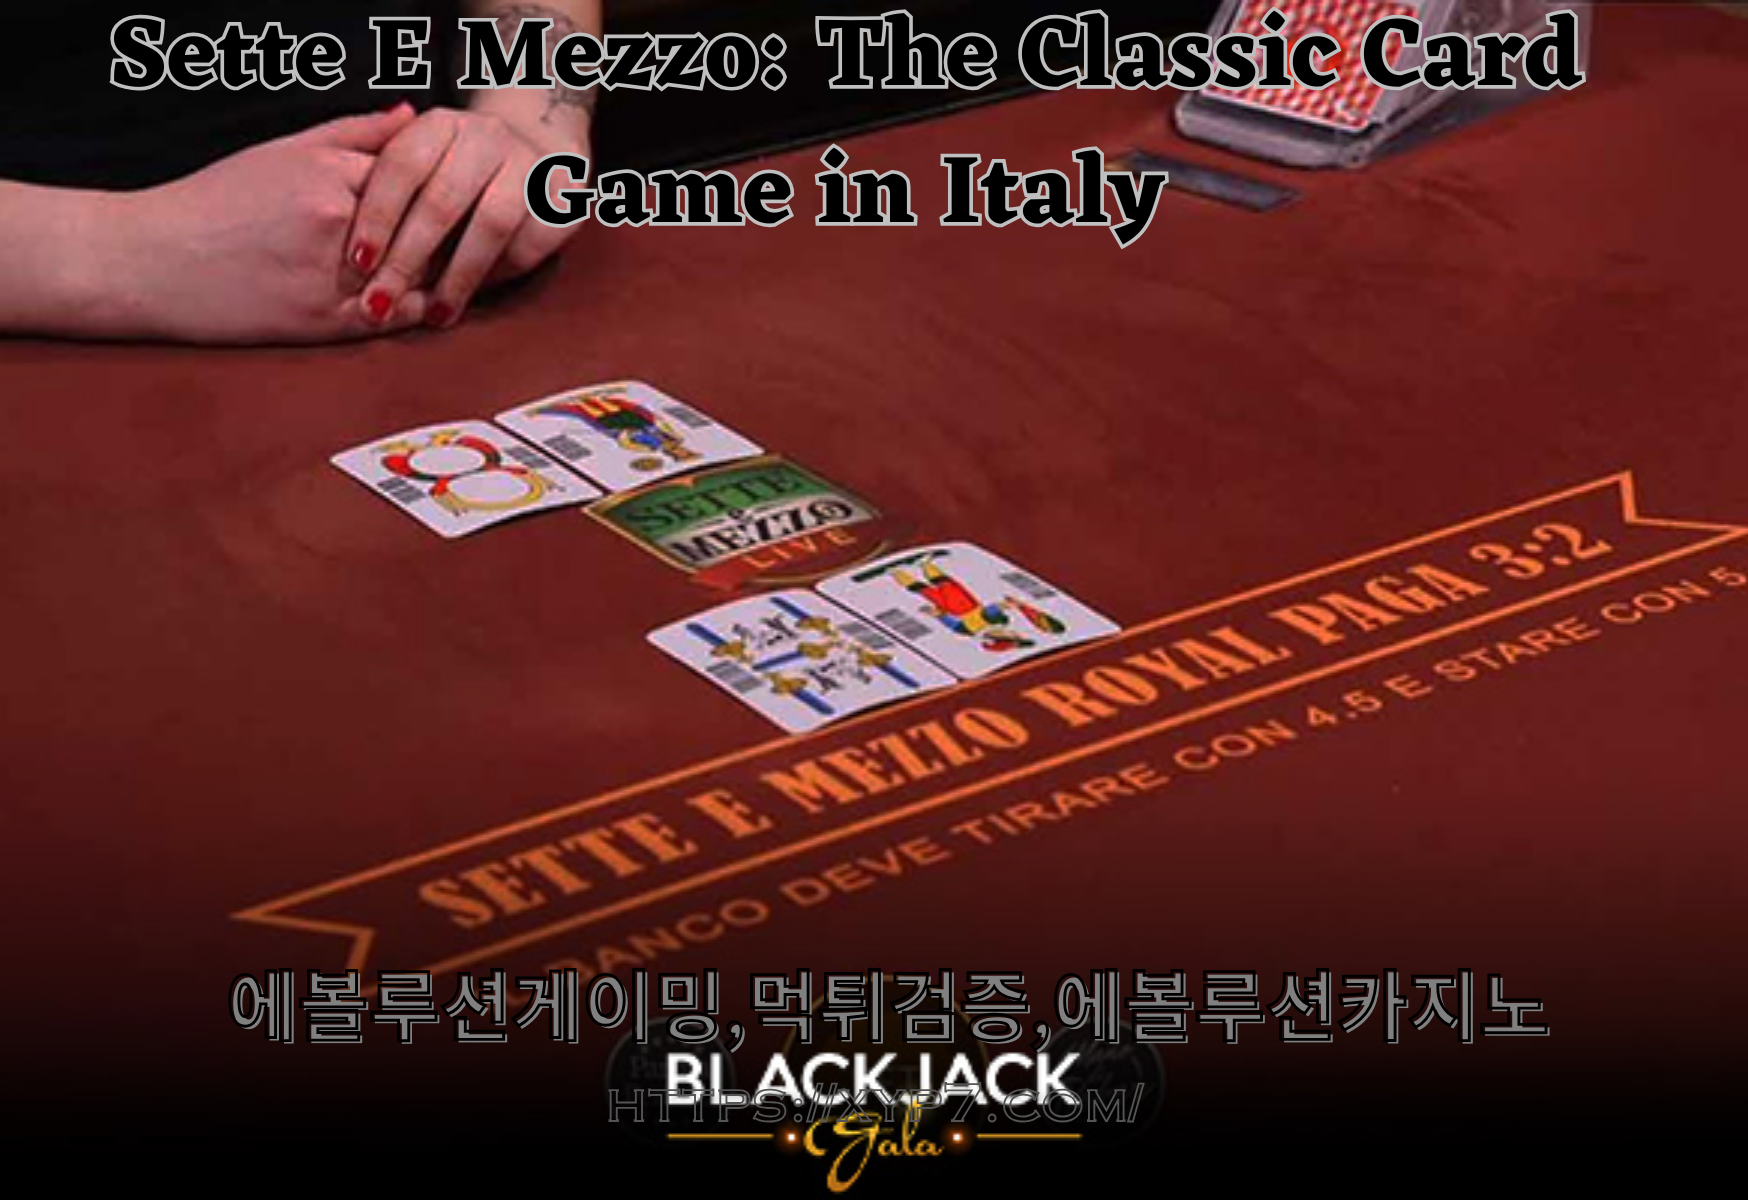 Sette E Mezzo: The Classic Card Game in Italy